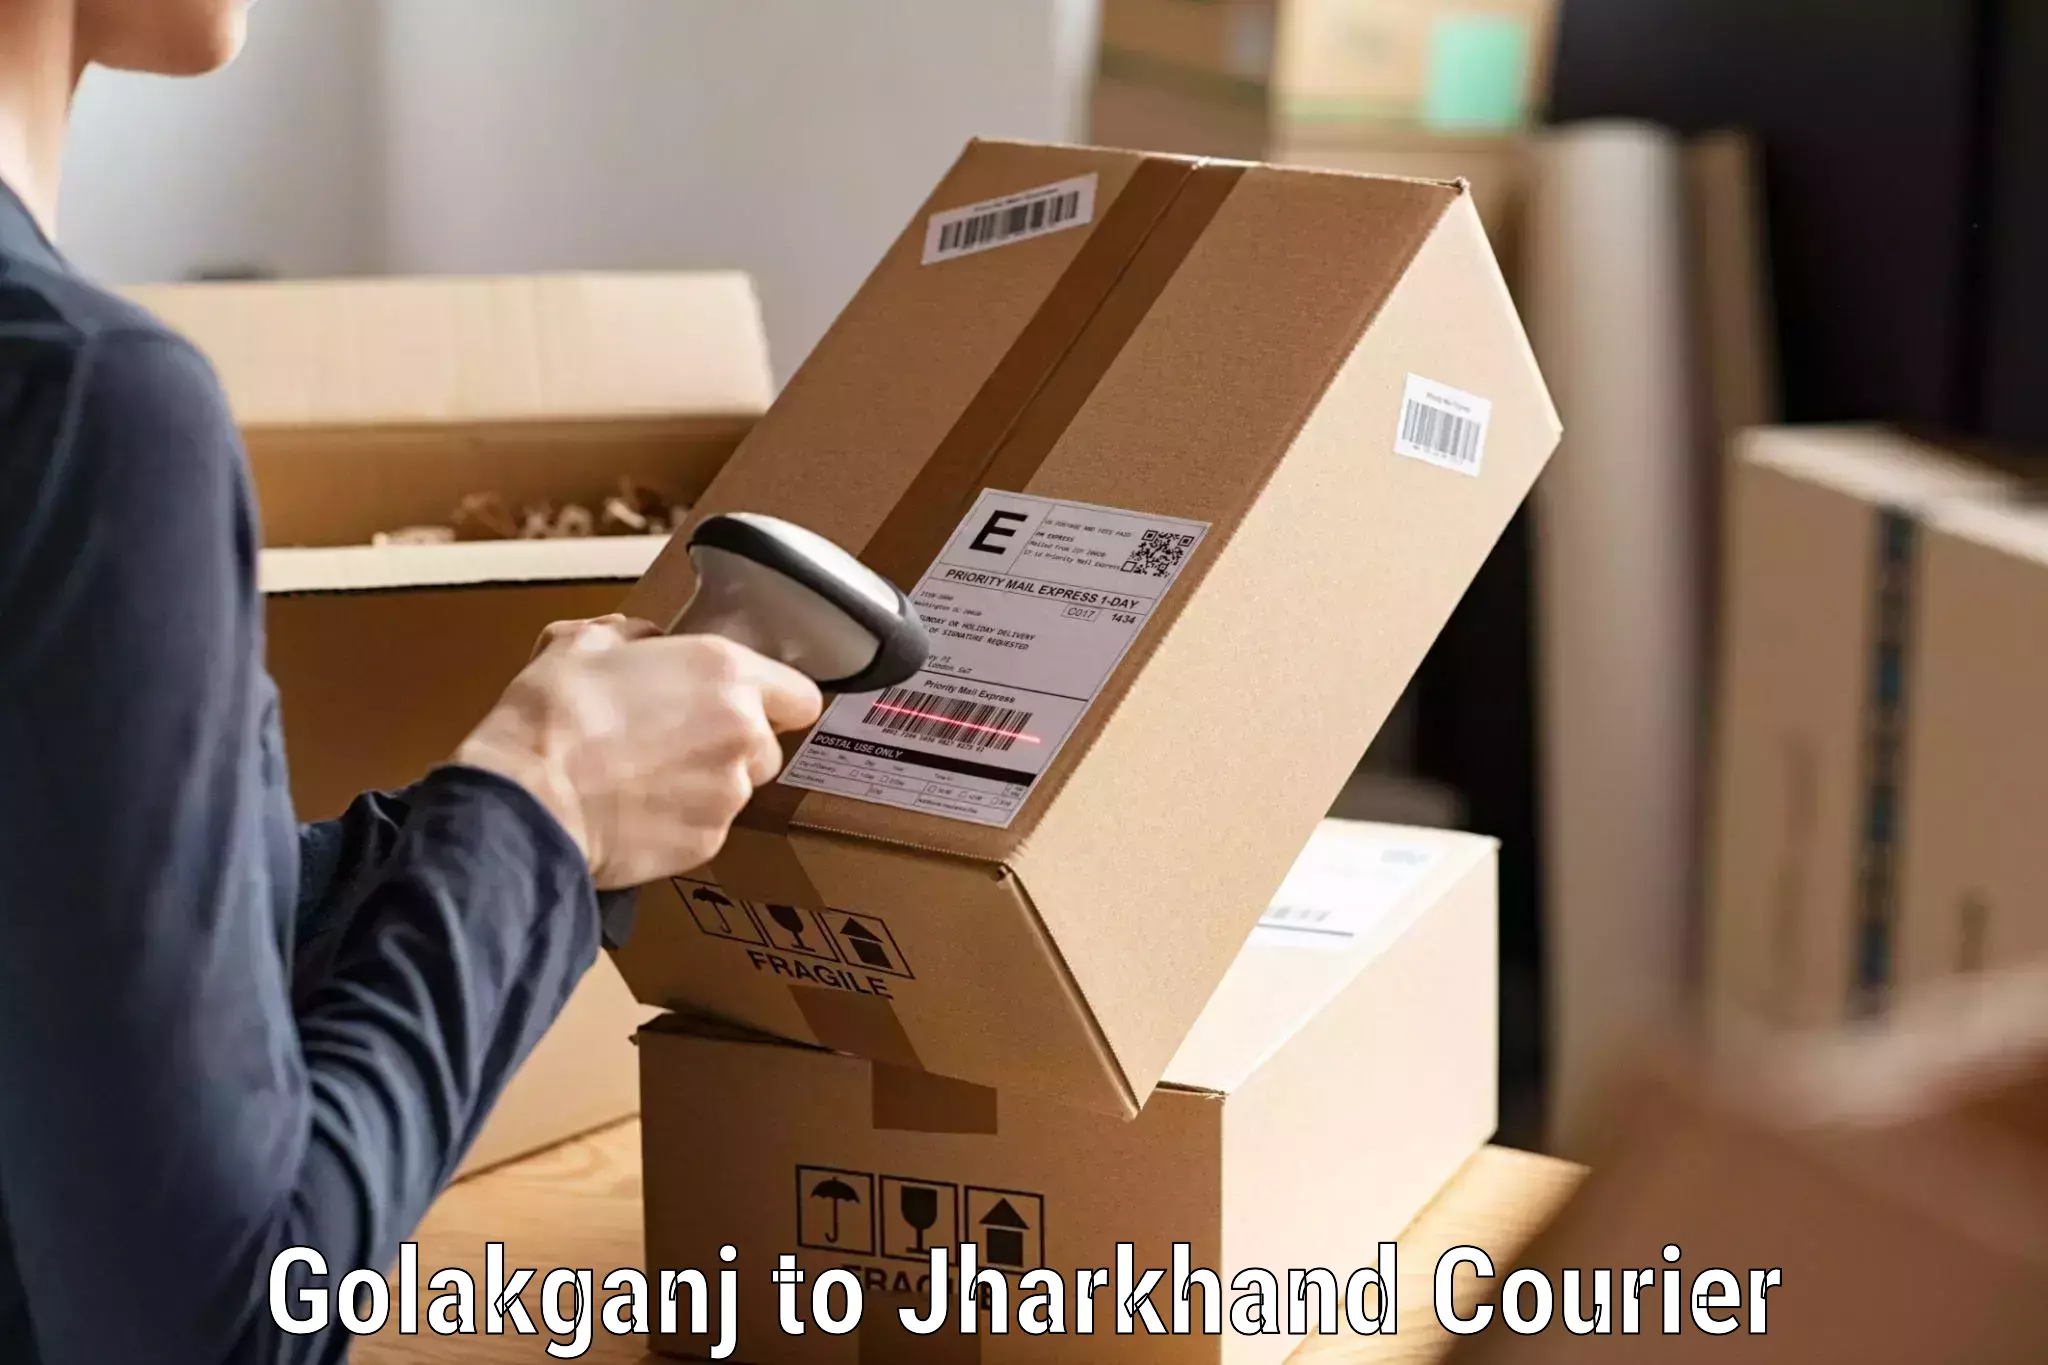 Comprehensive delivery network Golakganj to Jamshedpur